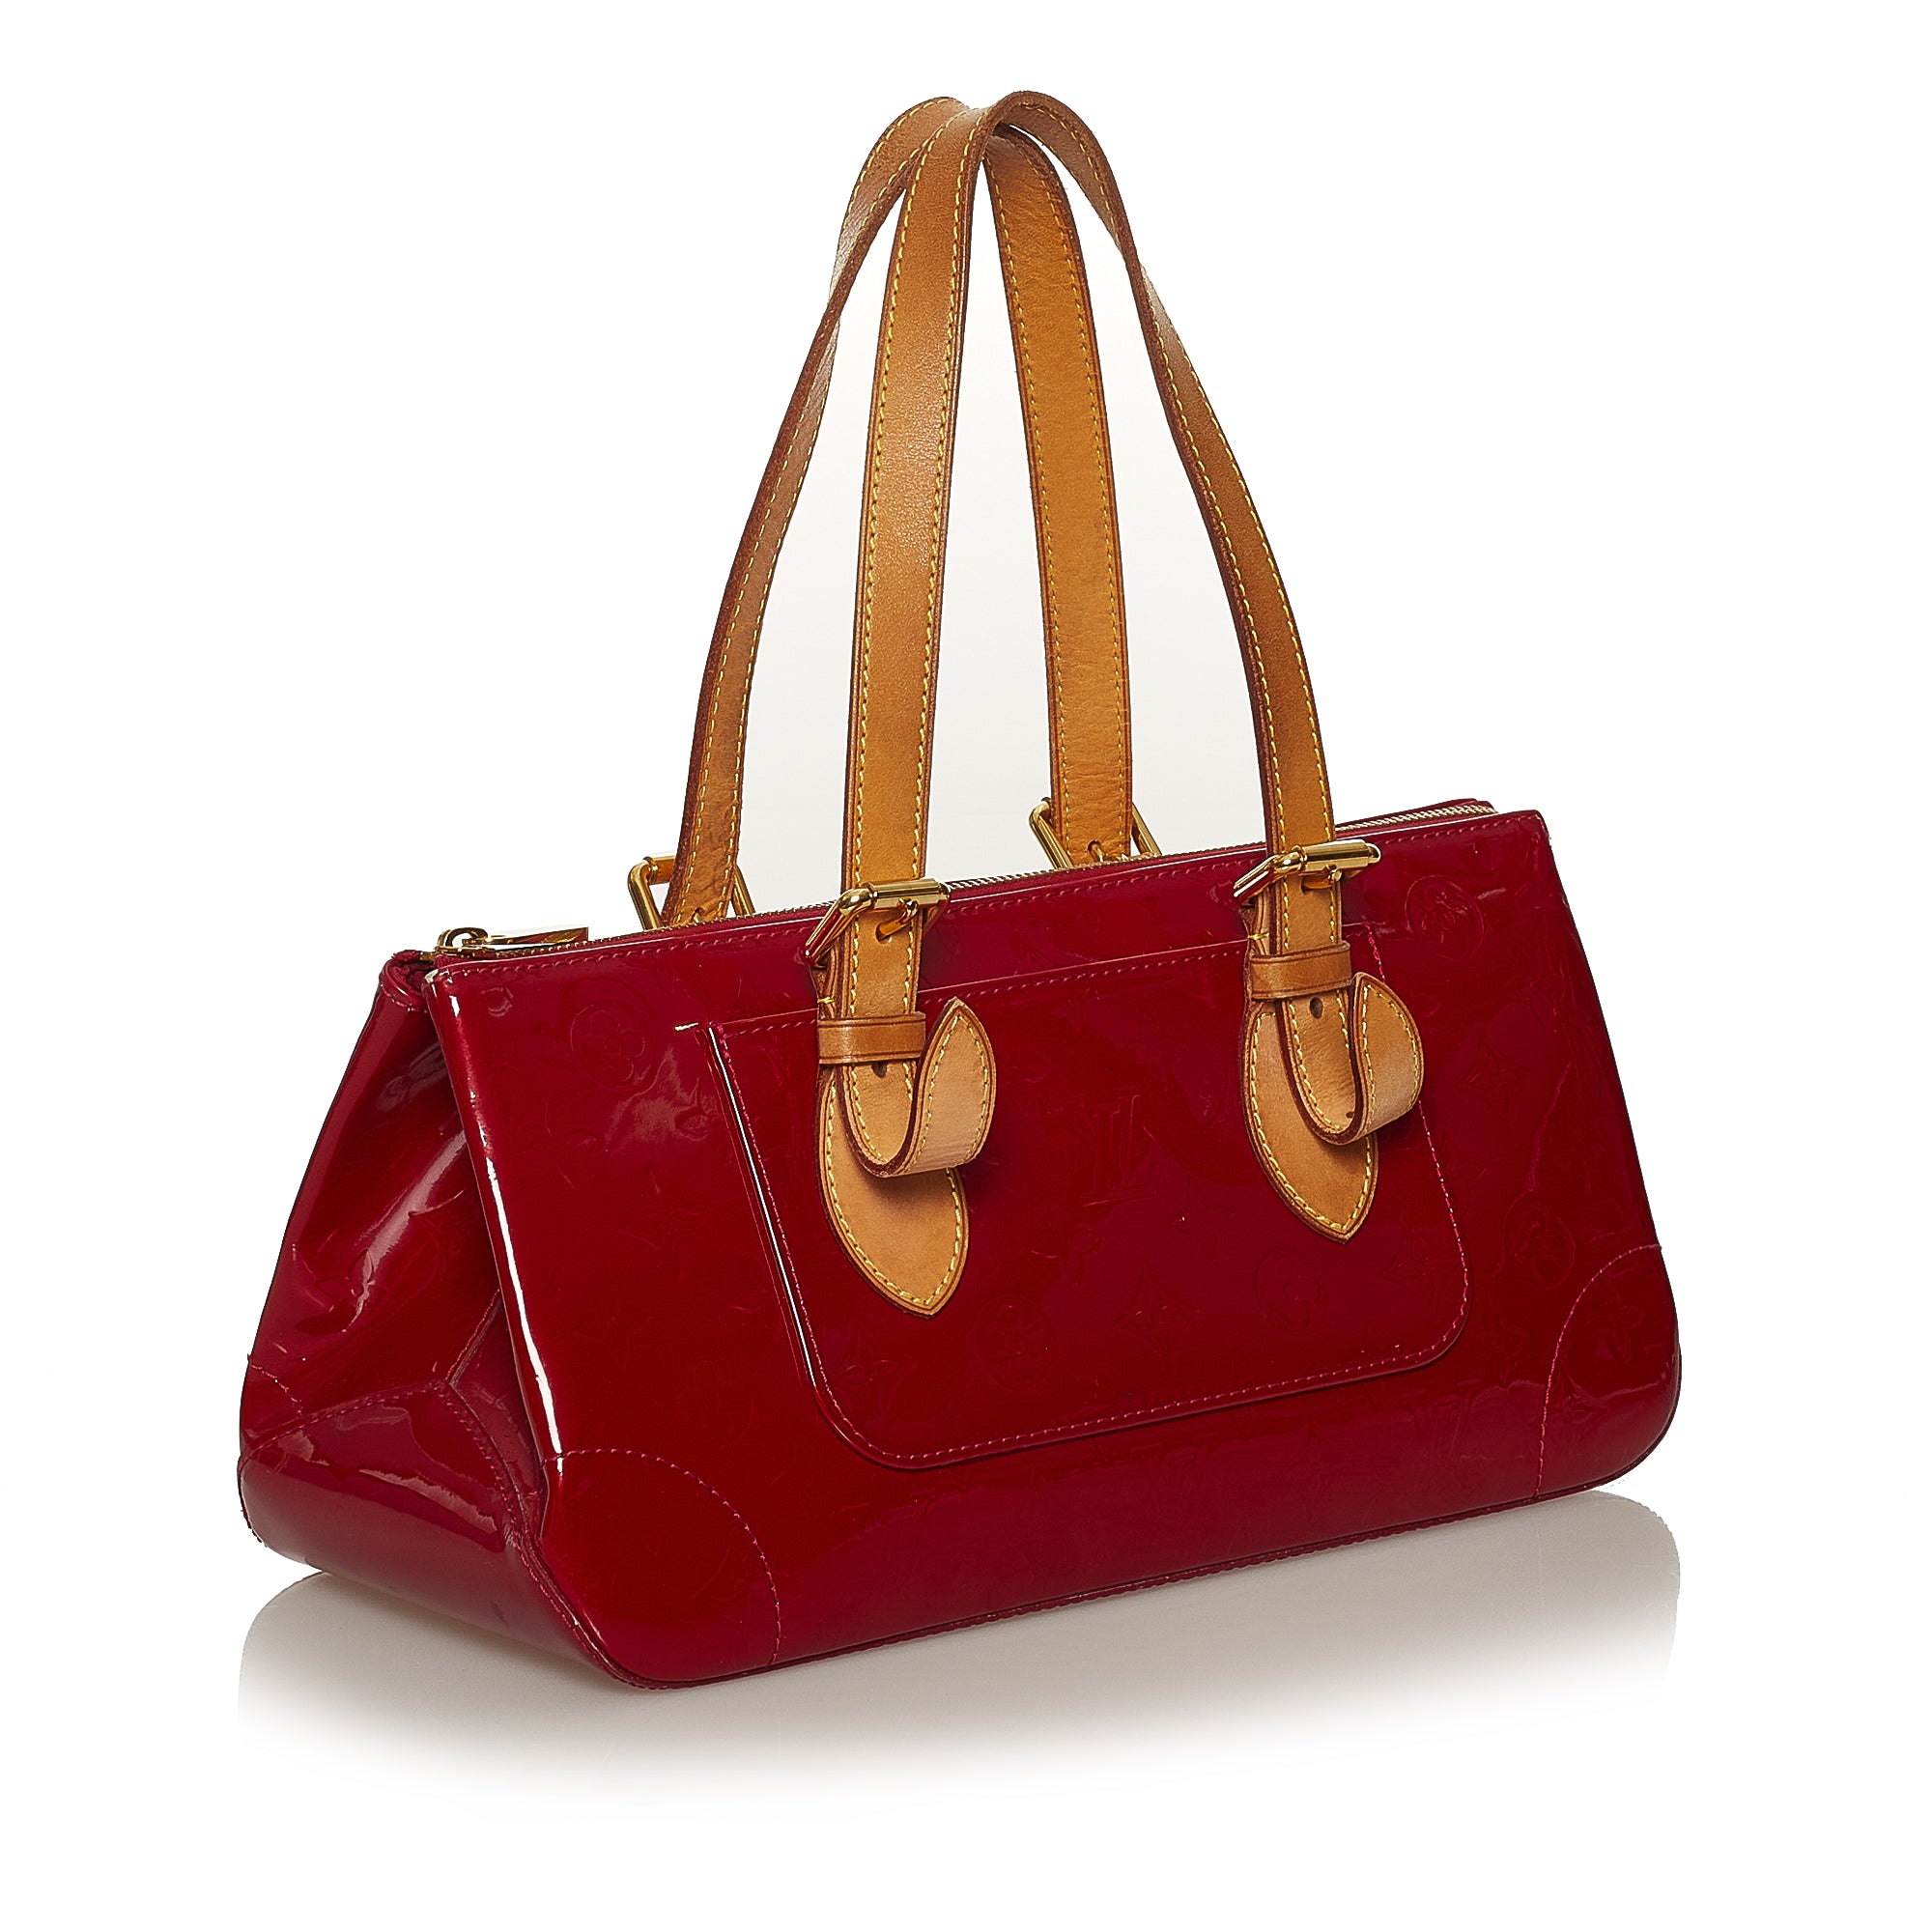 Used Louis Vuitton Rosewood Avenue Vernis Brd/Enamel/Brd Bag